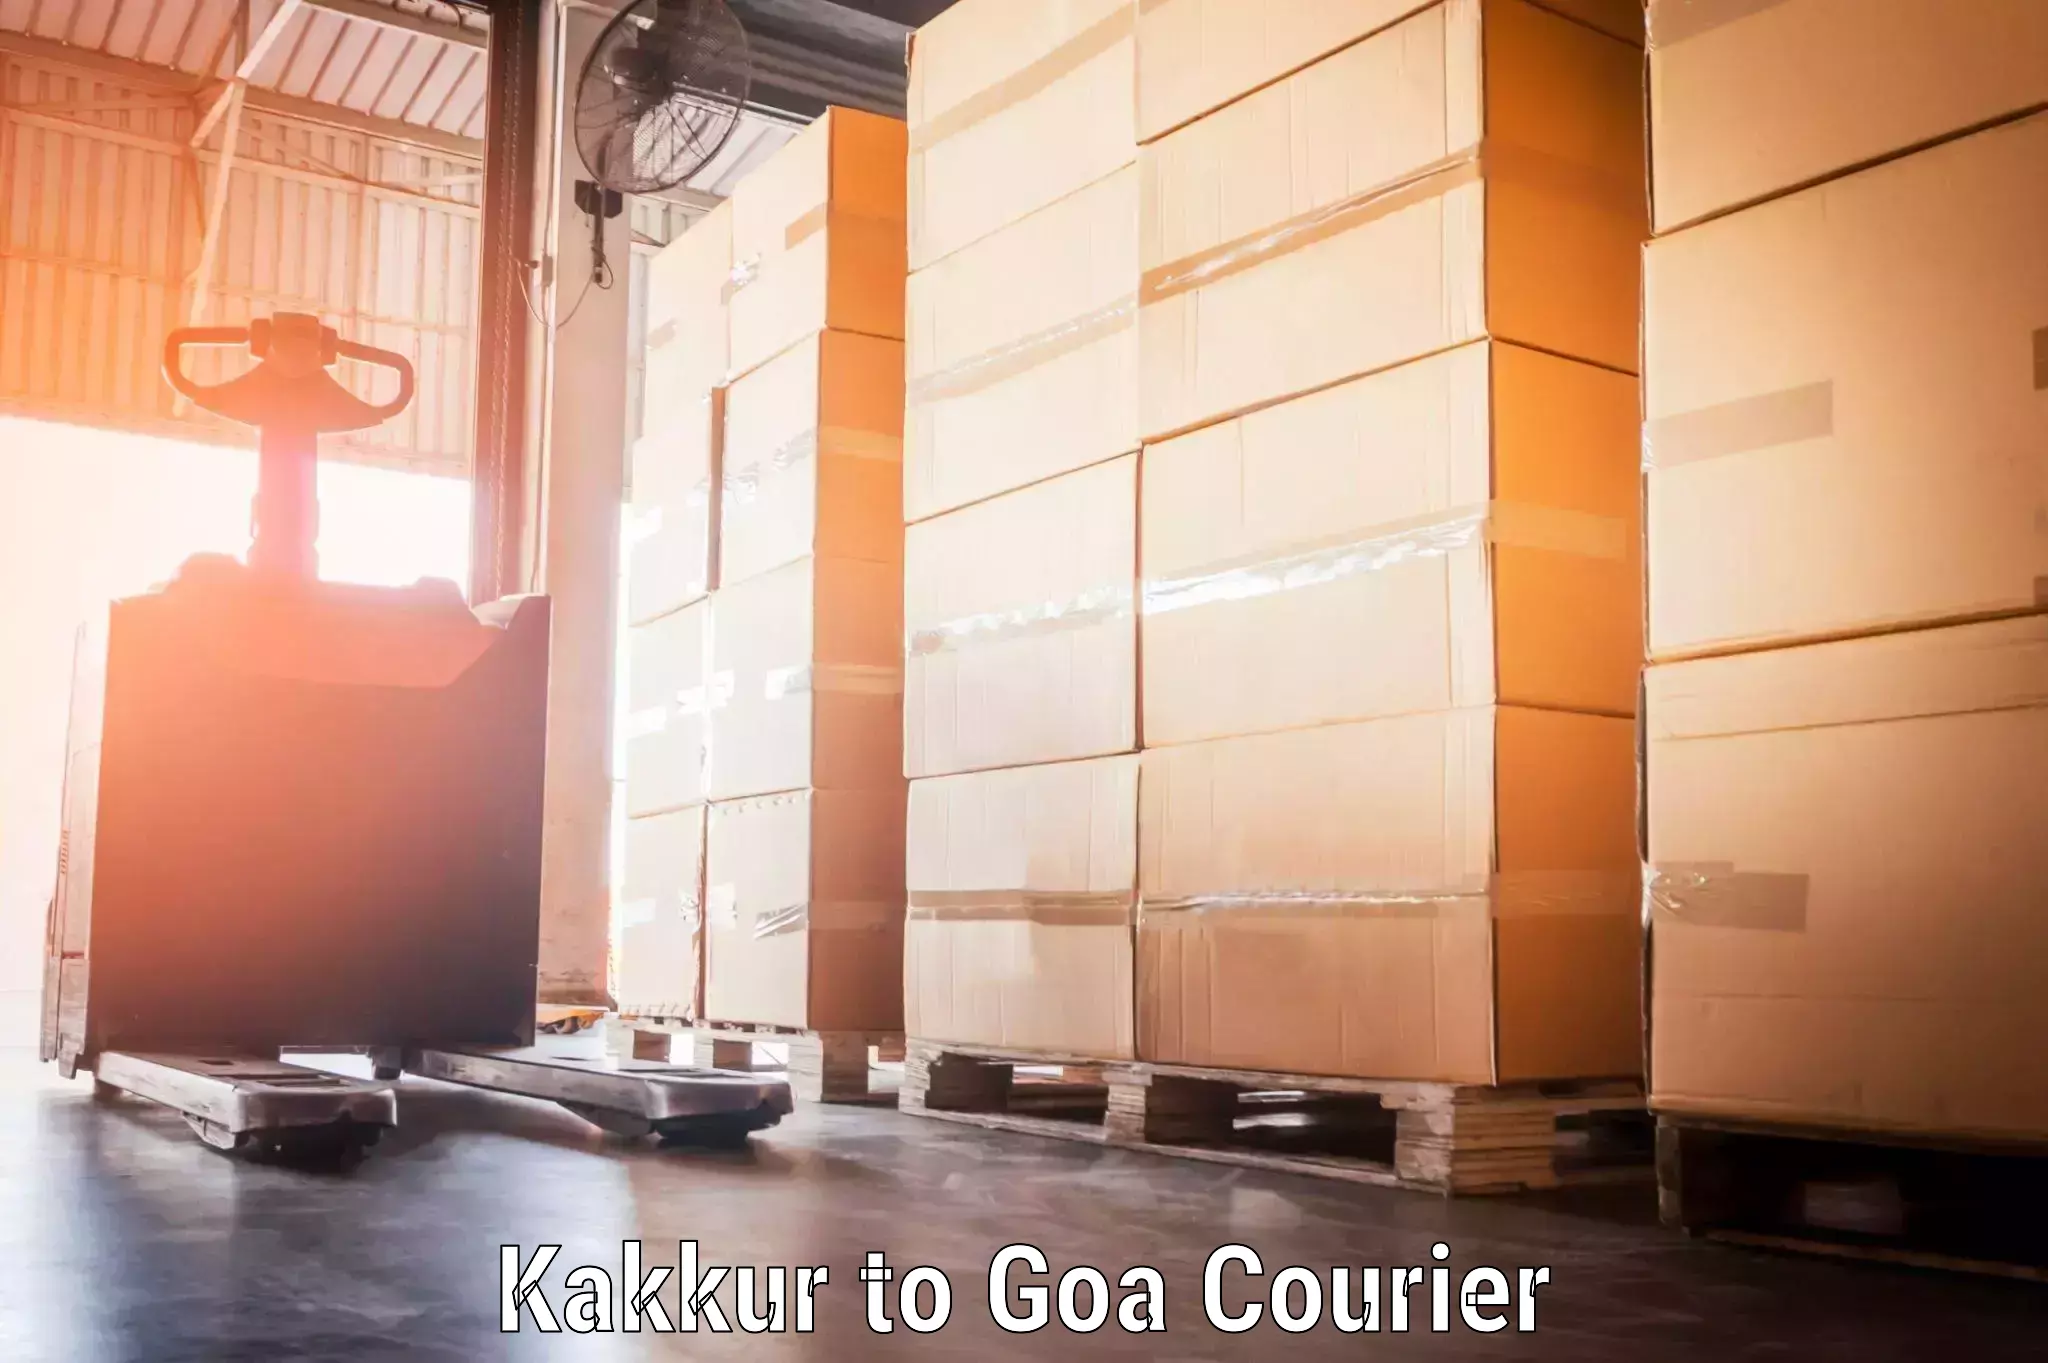 Baggage shipping experience Kakkur to Goa